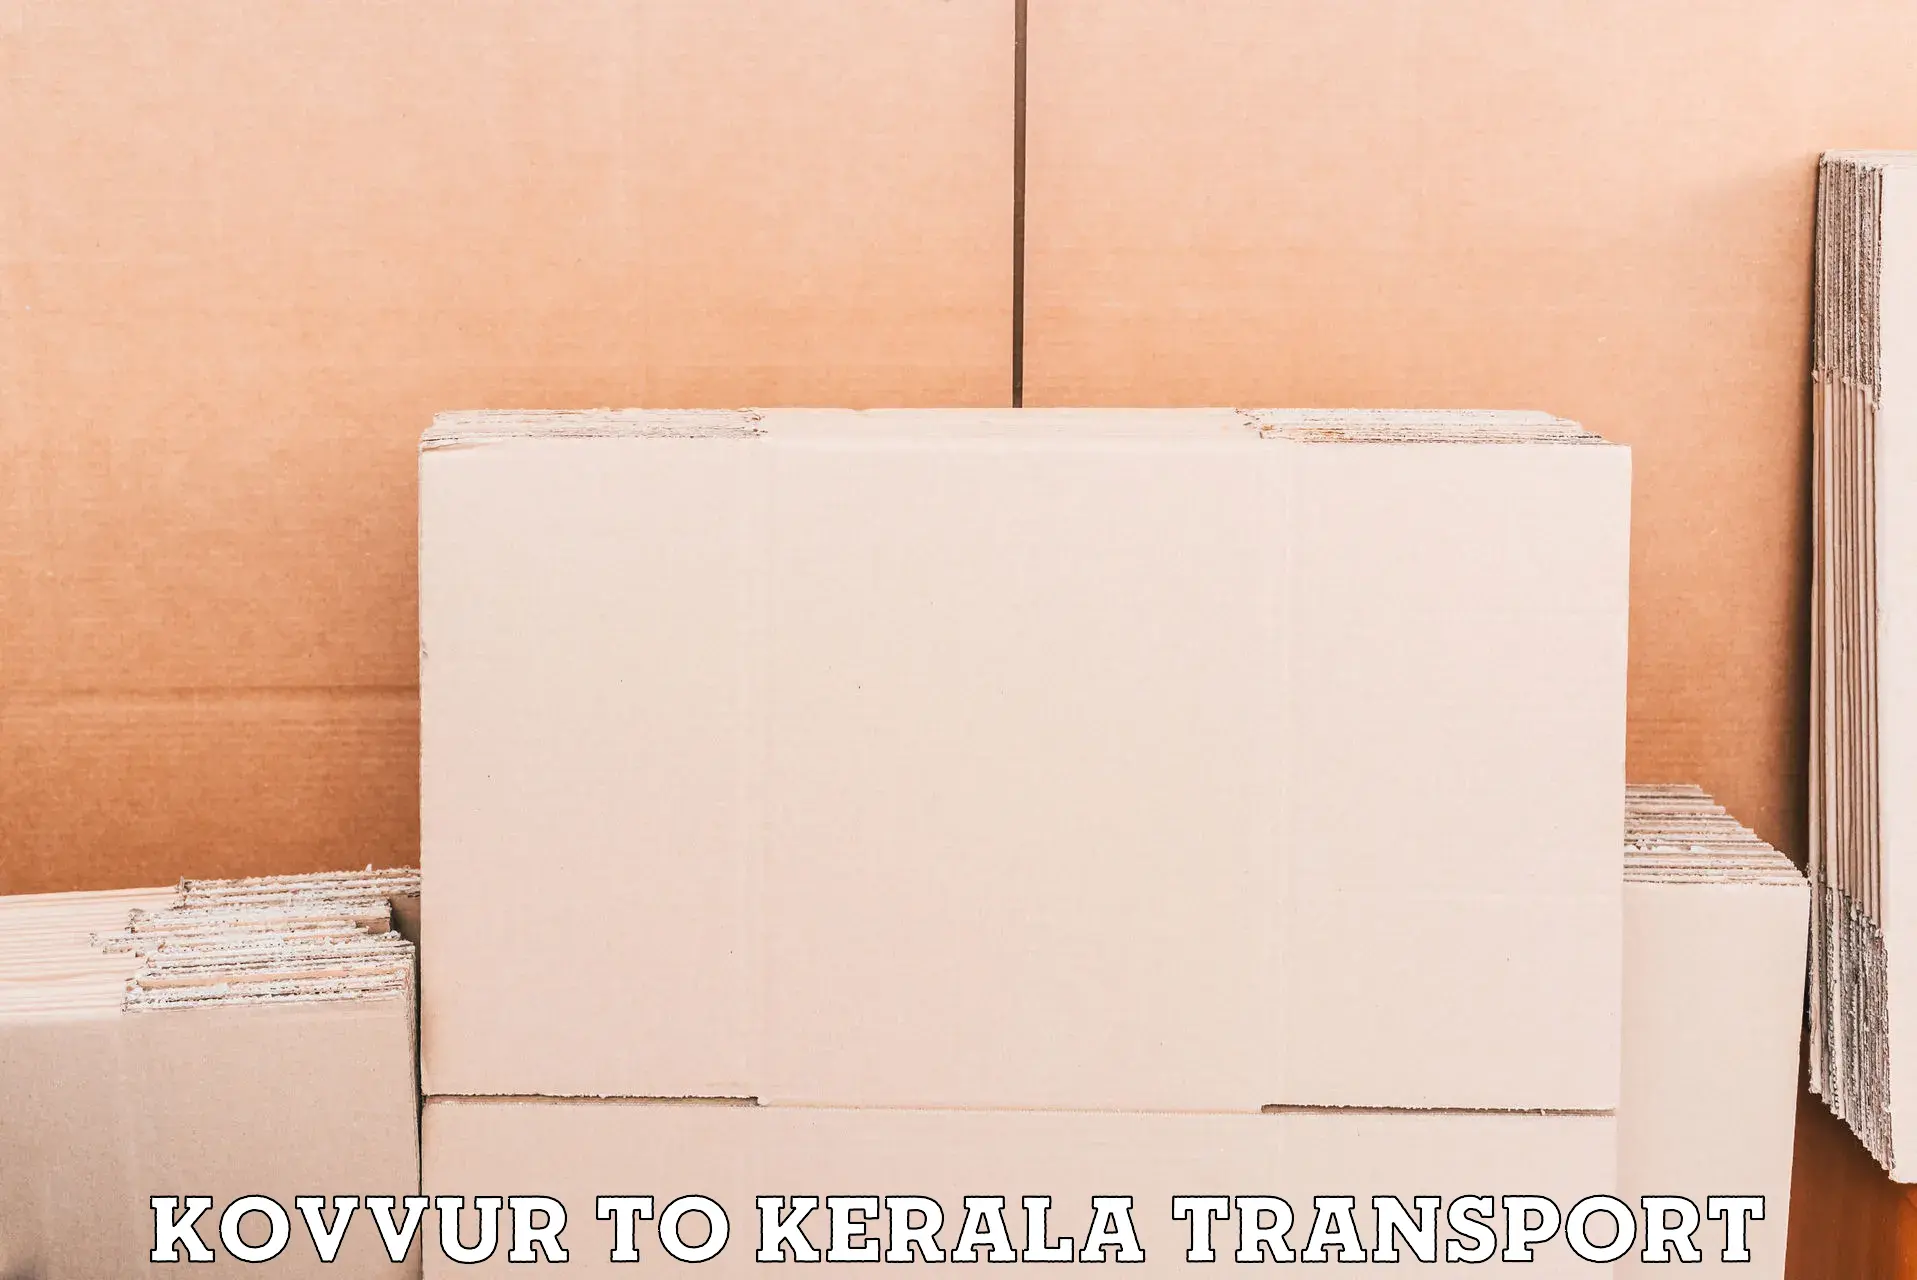 Air cargo transport services Kovvur to Kakkur